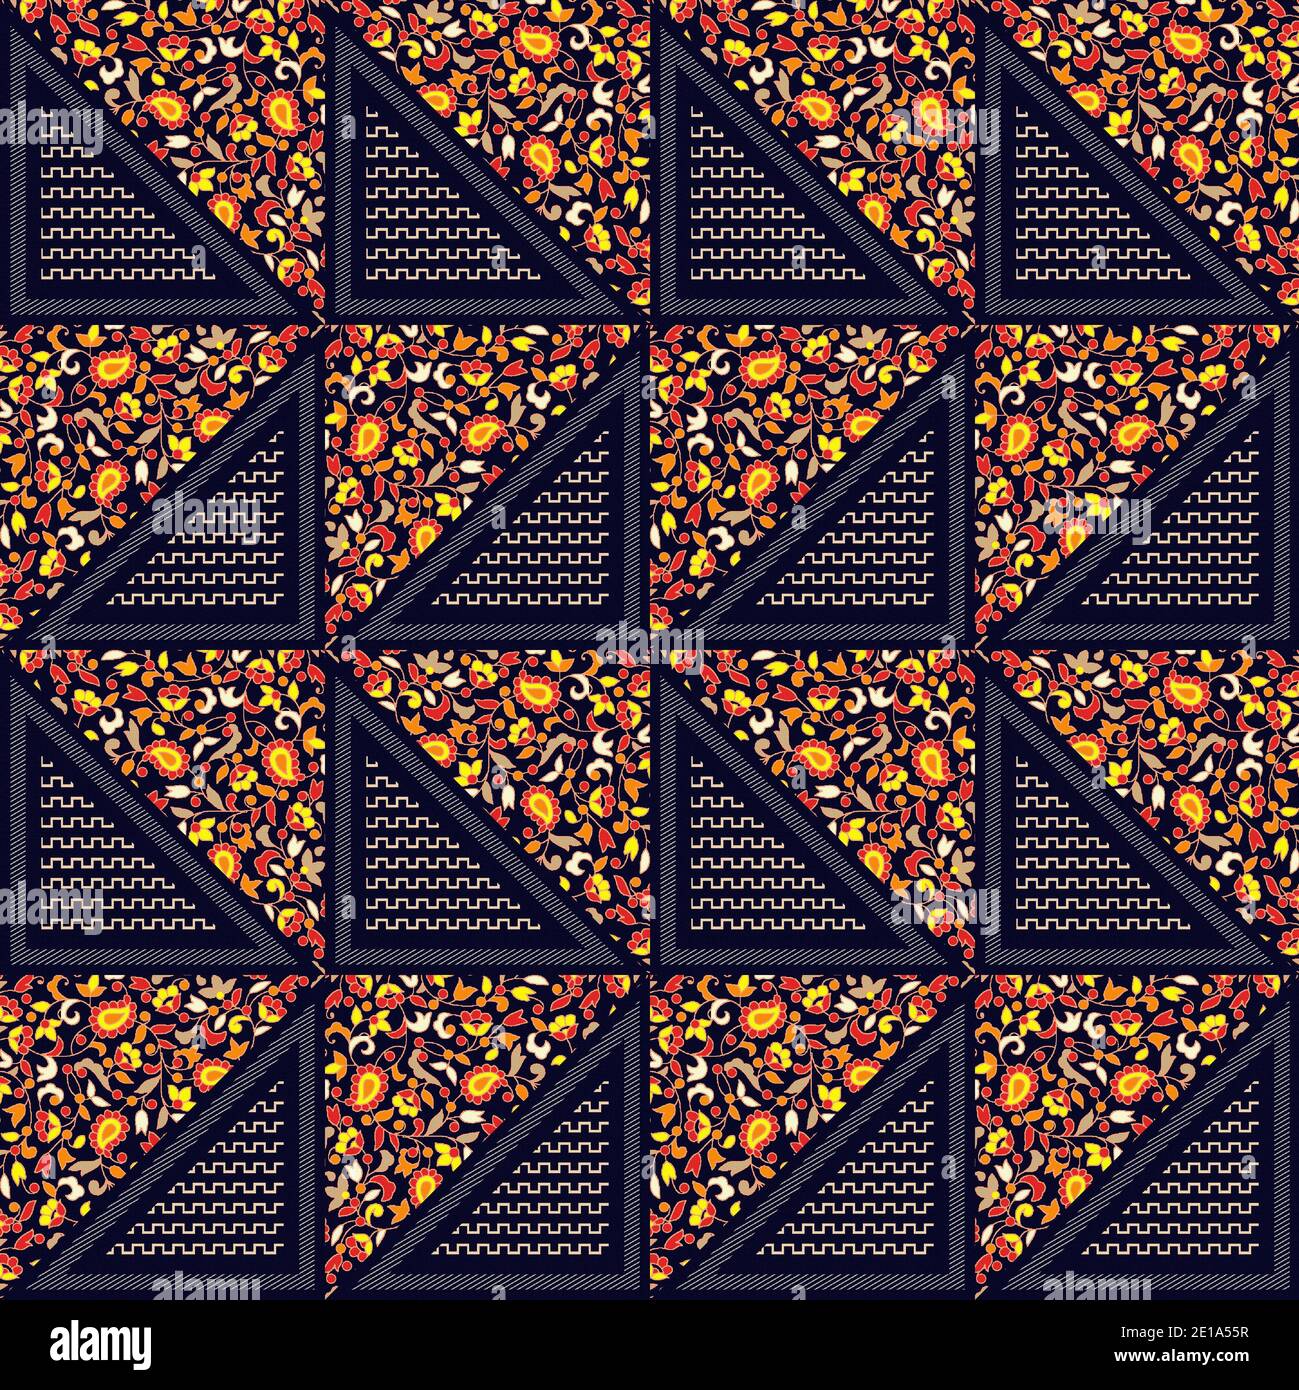 geometrical seamless pattern Stock Photo